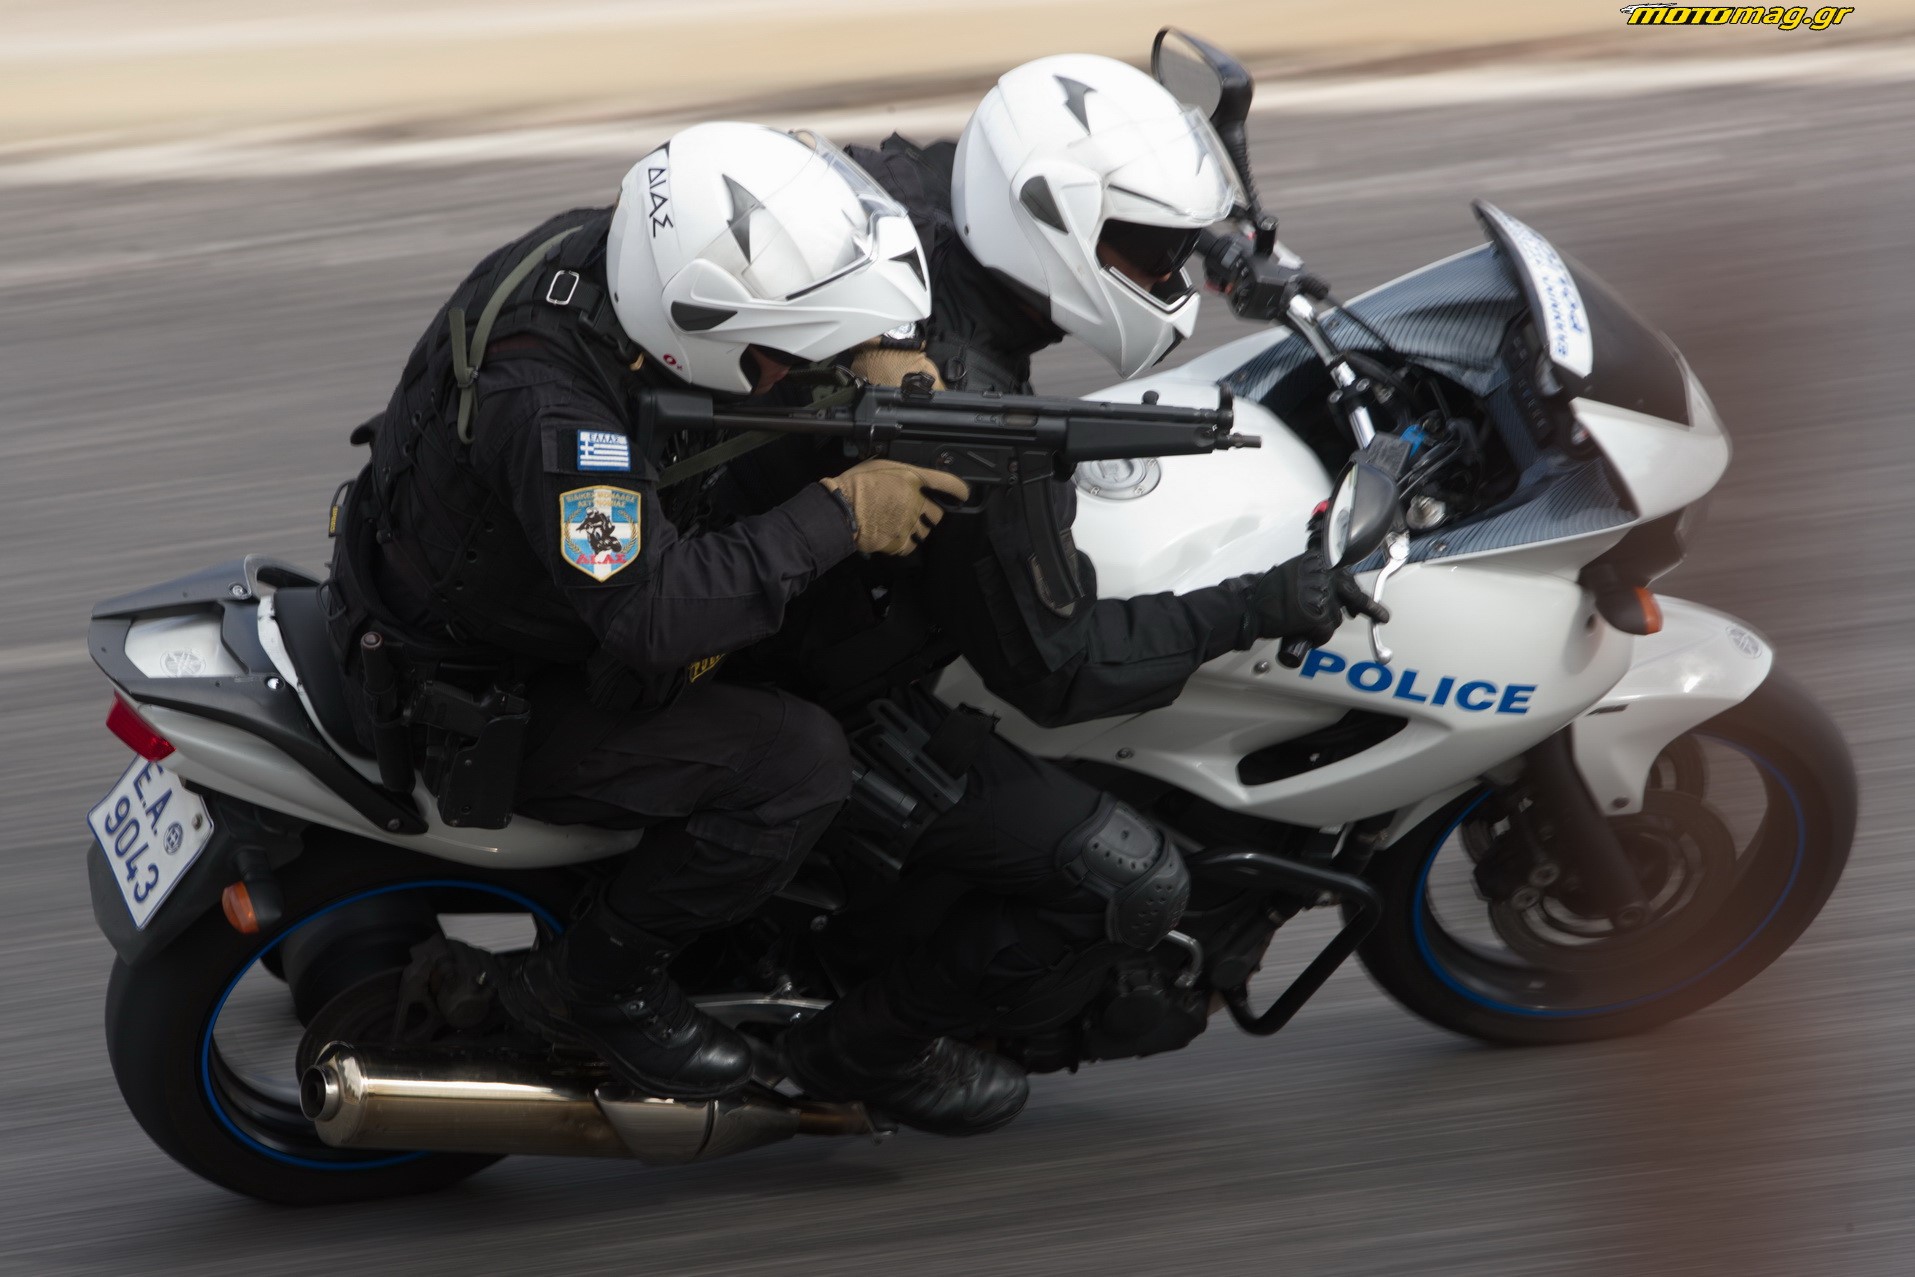 Οι 5 + 1 κίνδυνοι της γρήγορης αστυνομικής οδήγησης - του Λάμπρου Δημητρέλου - Φωτογραφία 4